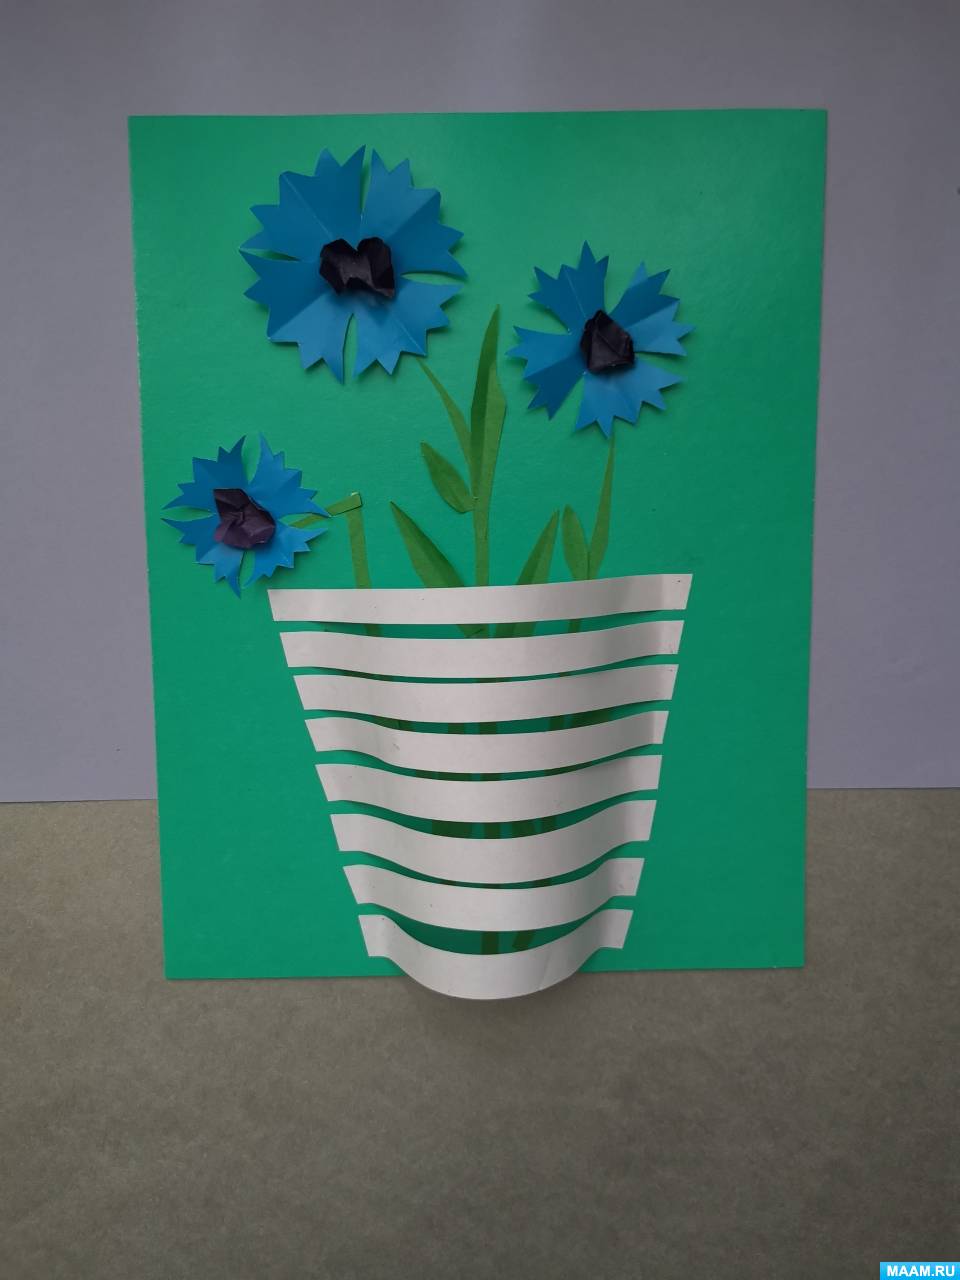 Цветок из бумаги - 800 поделок для детей. Пошаговые мастер-классы